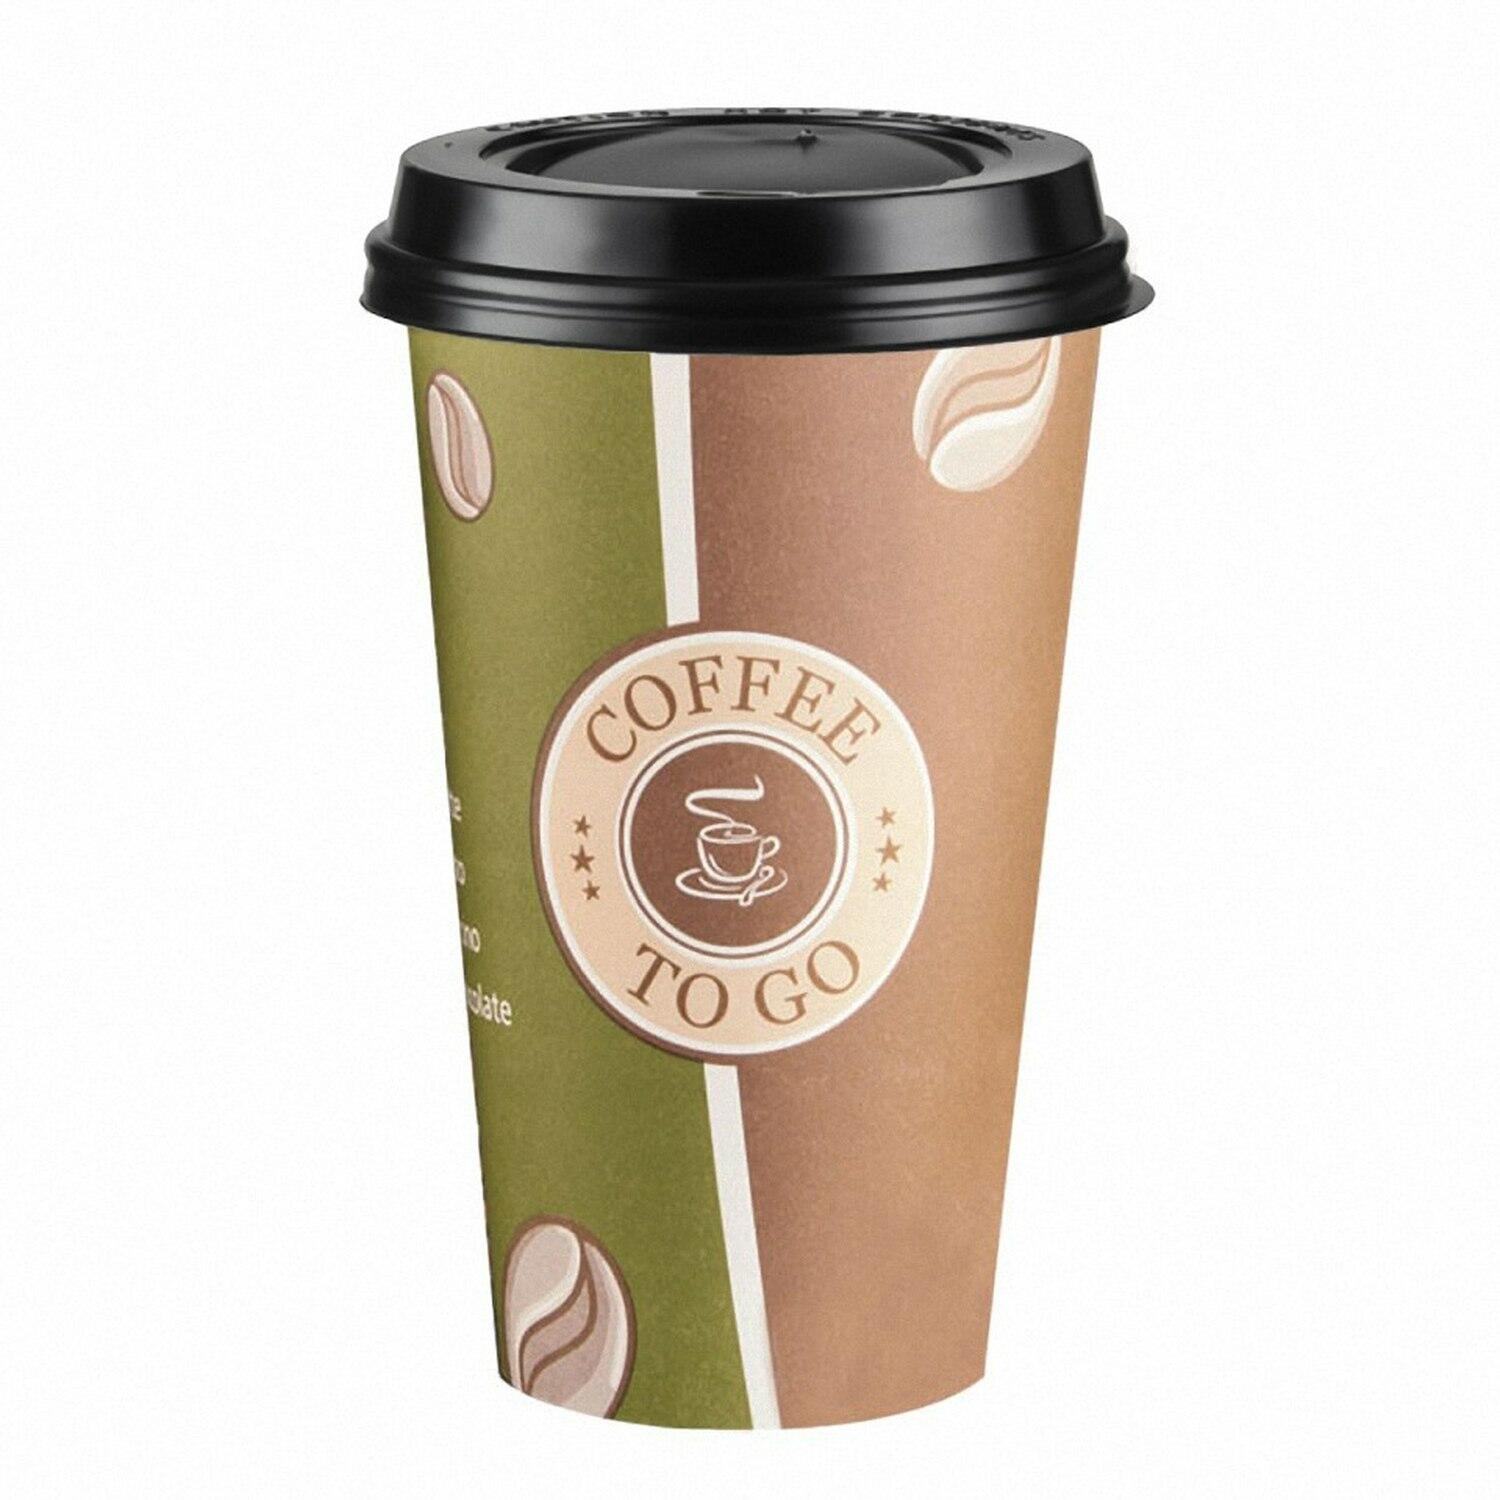 Kaffeebecher Premium Coffee to go mit Deckel, Pappe beschichtet 400 ml, 100 Stk.